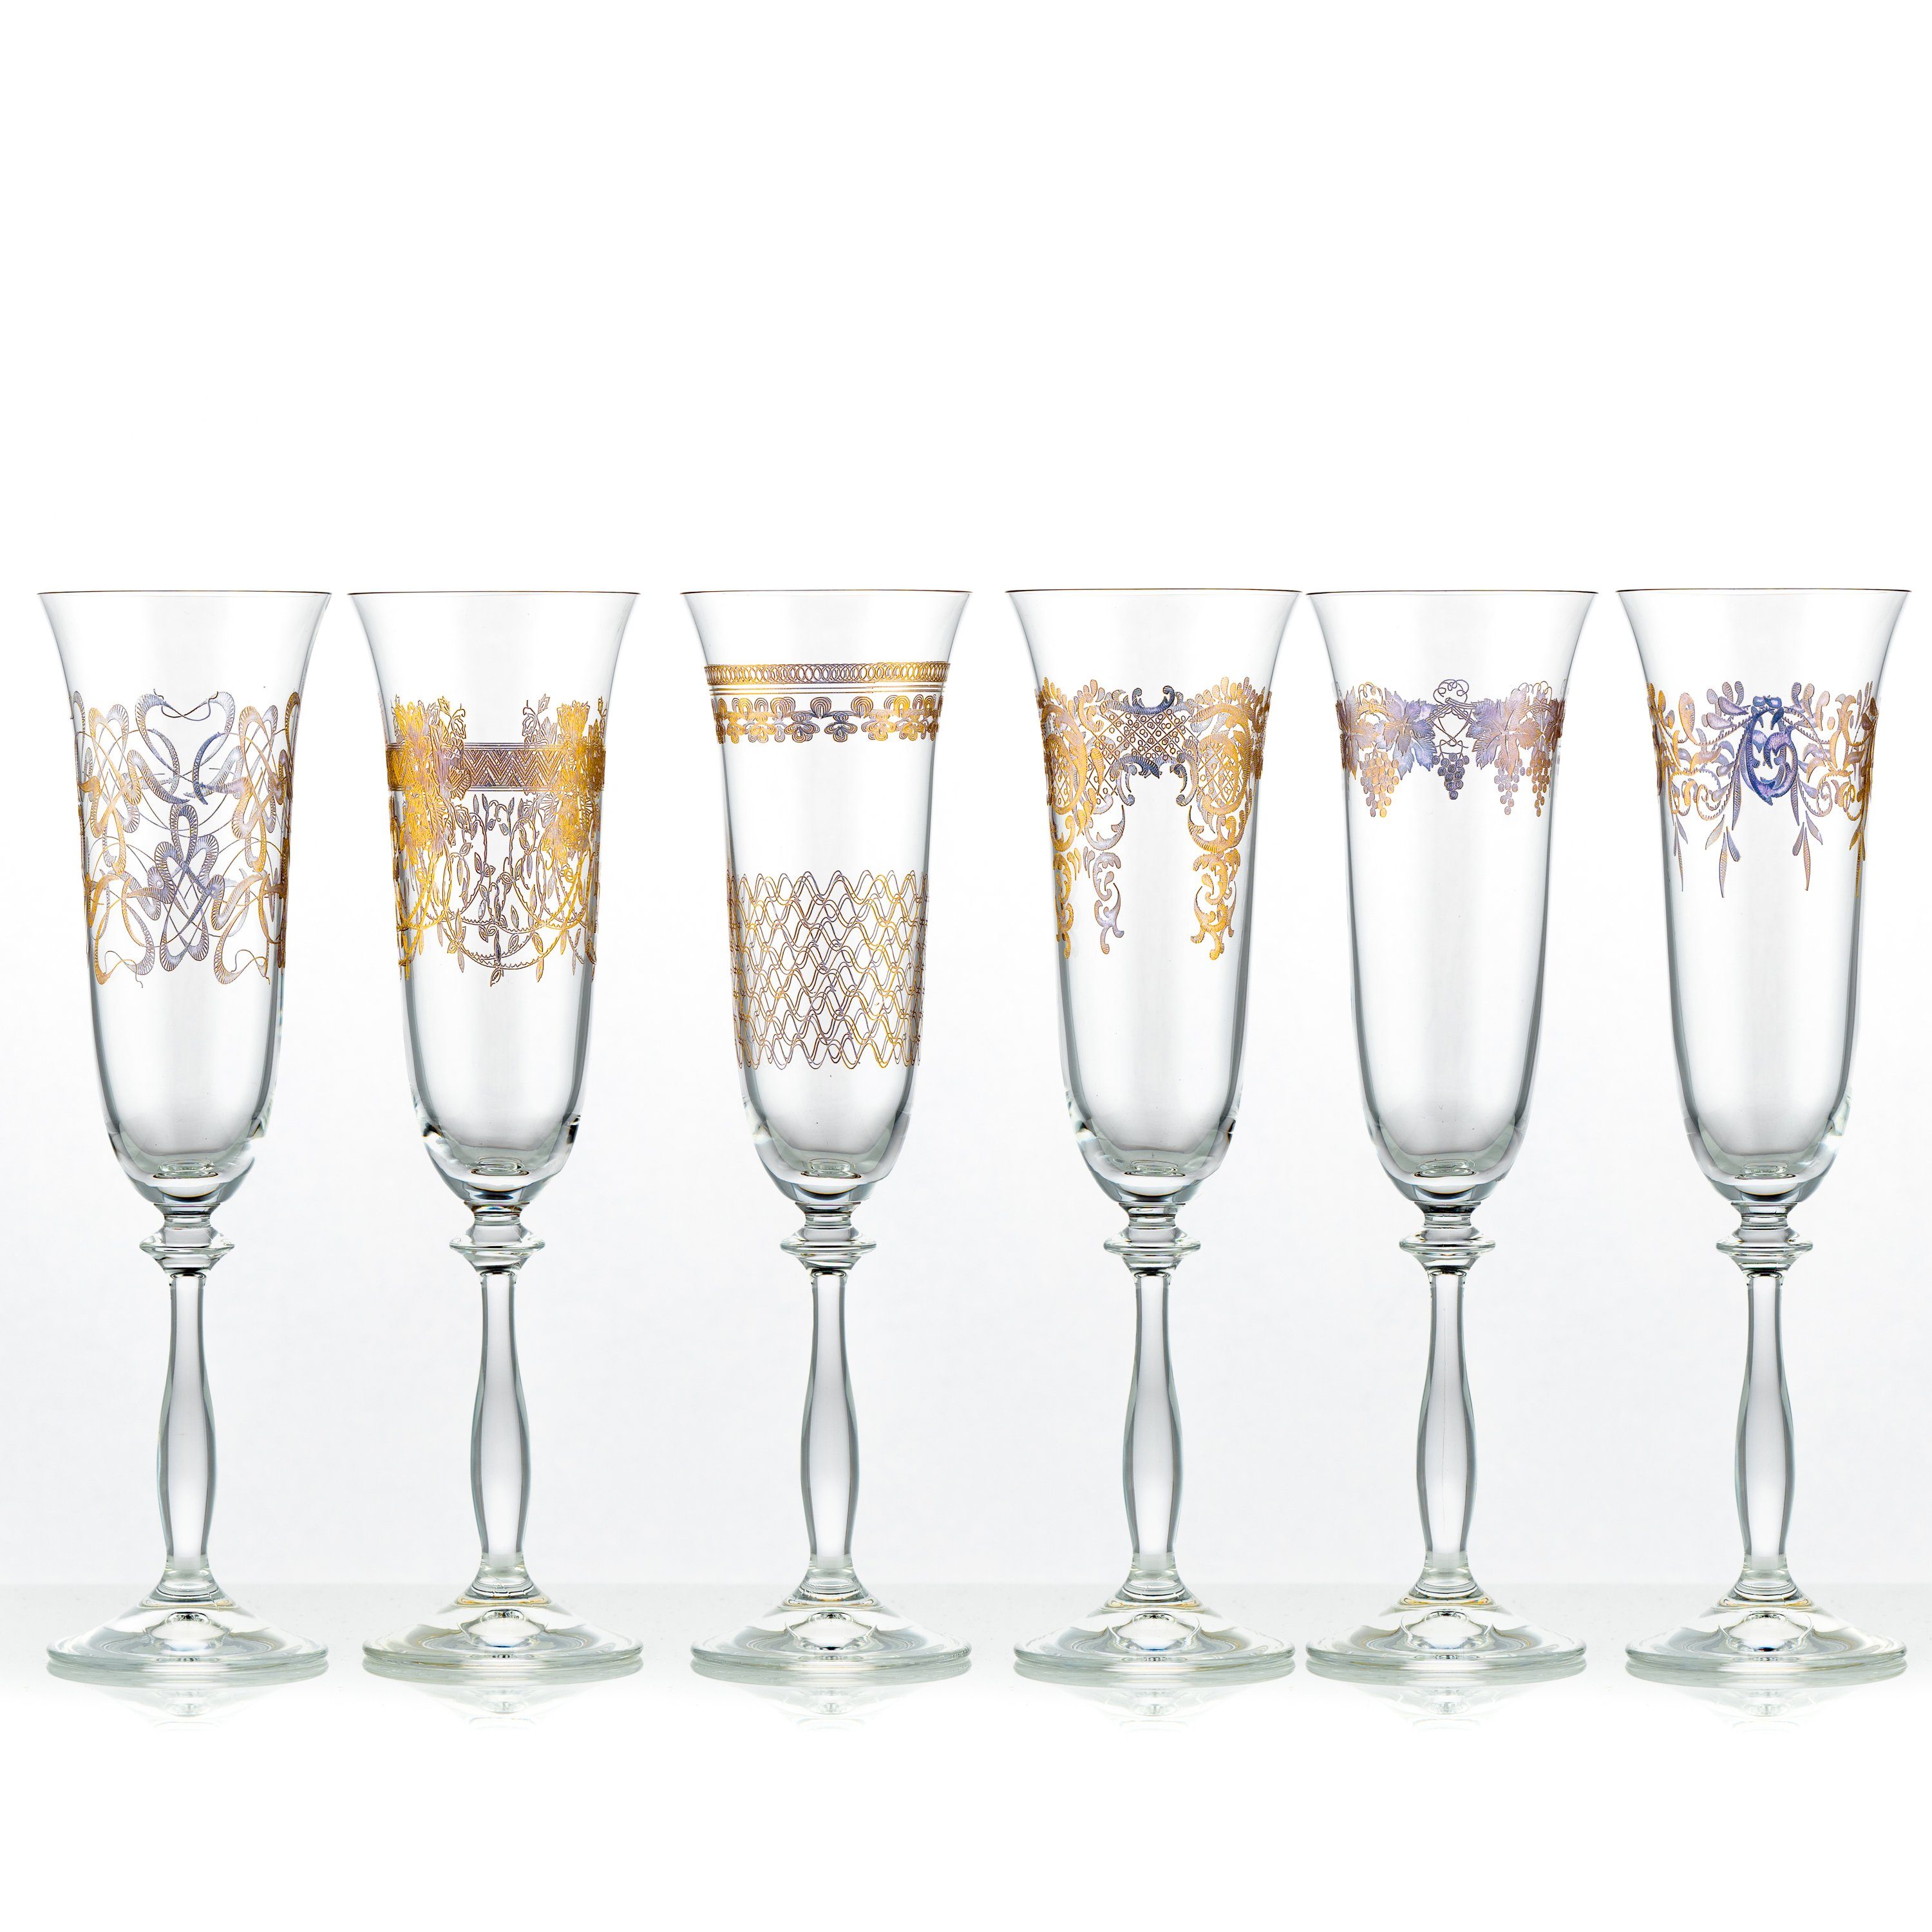 Crystalex Sektglas Royal unterschiedlichen Ornamenten Gold Бокалы для шампанского 190 ml 6er Set, Kristallglas, Pantografie in Gold, Kristallglas, 6 unterschiedliche Ornamente